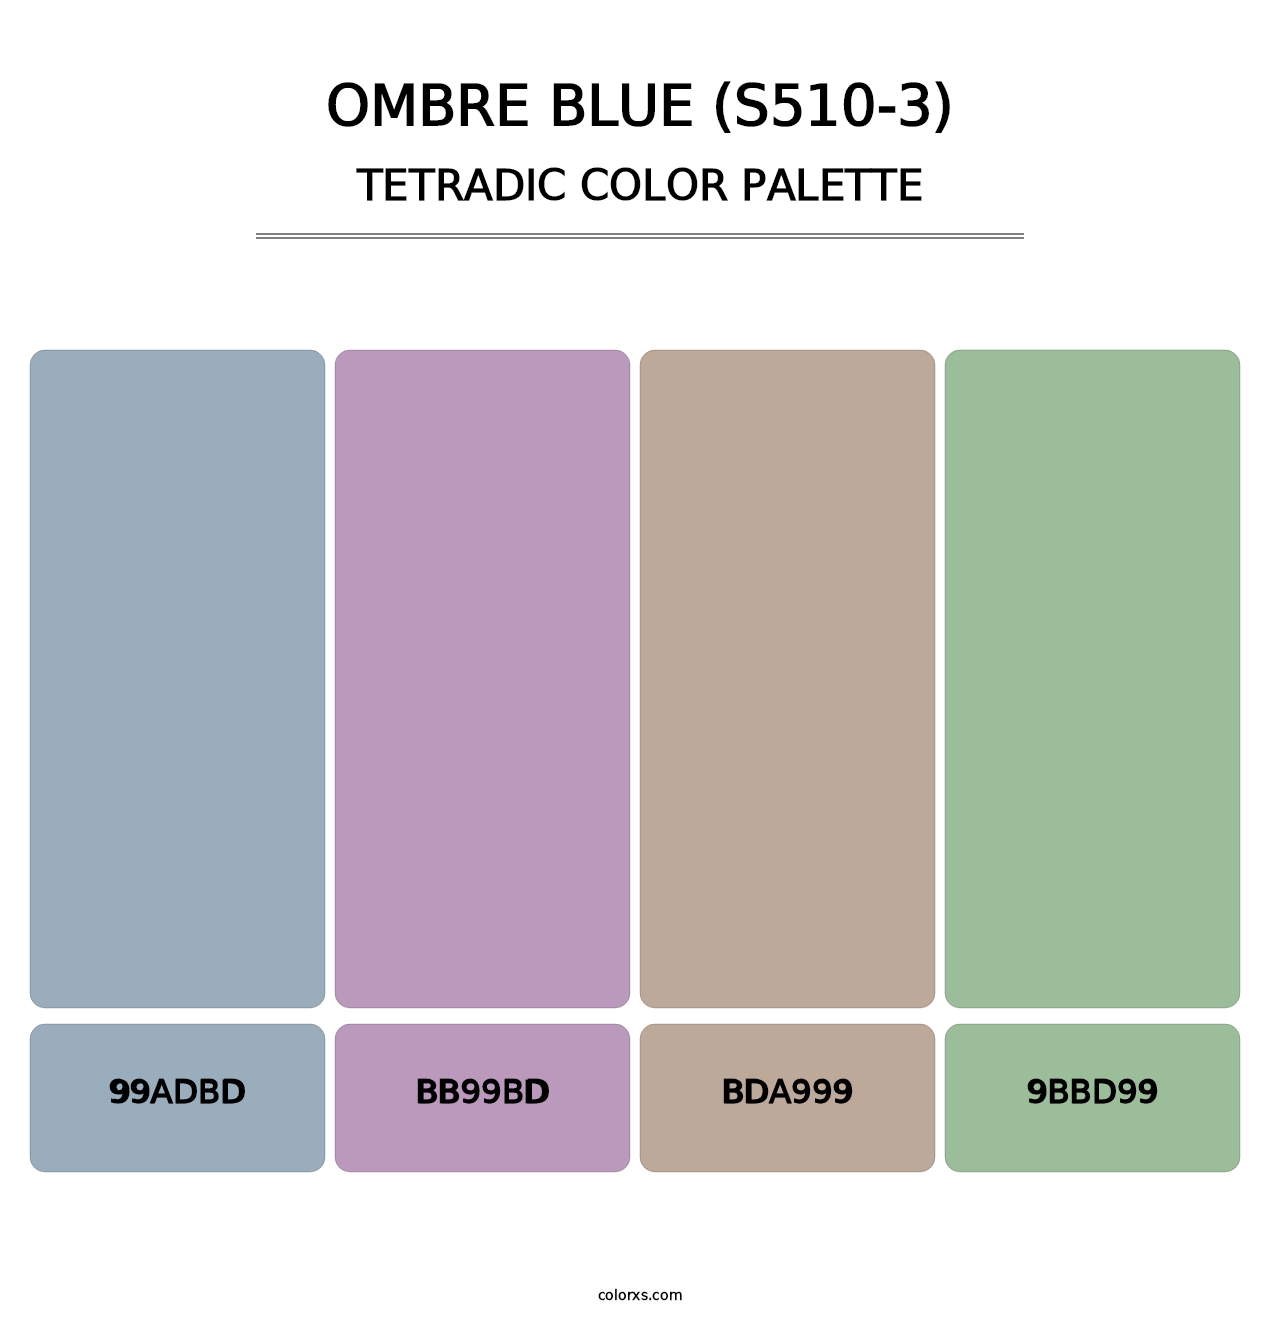 Ombre Blue (S510-3) - Tetradic Color Palette